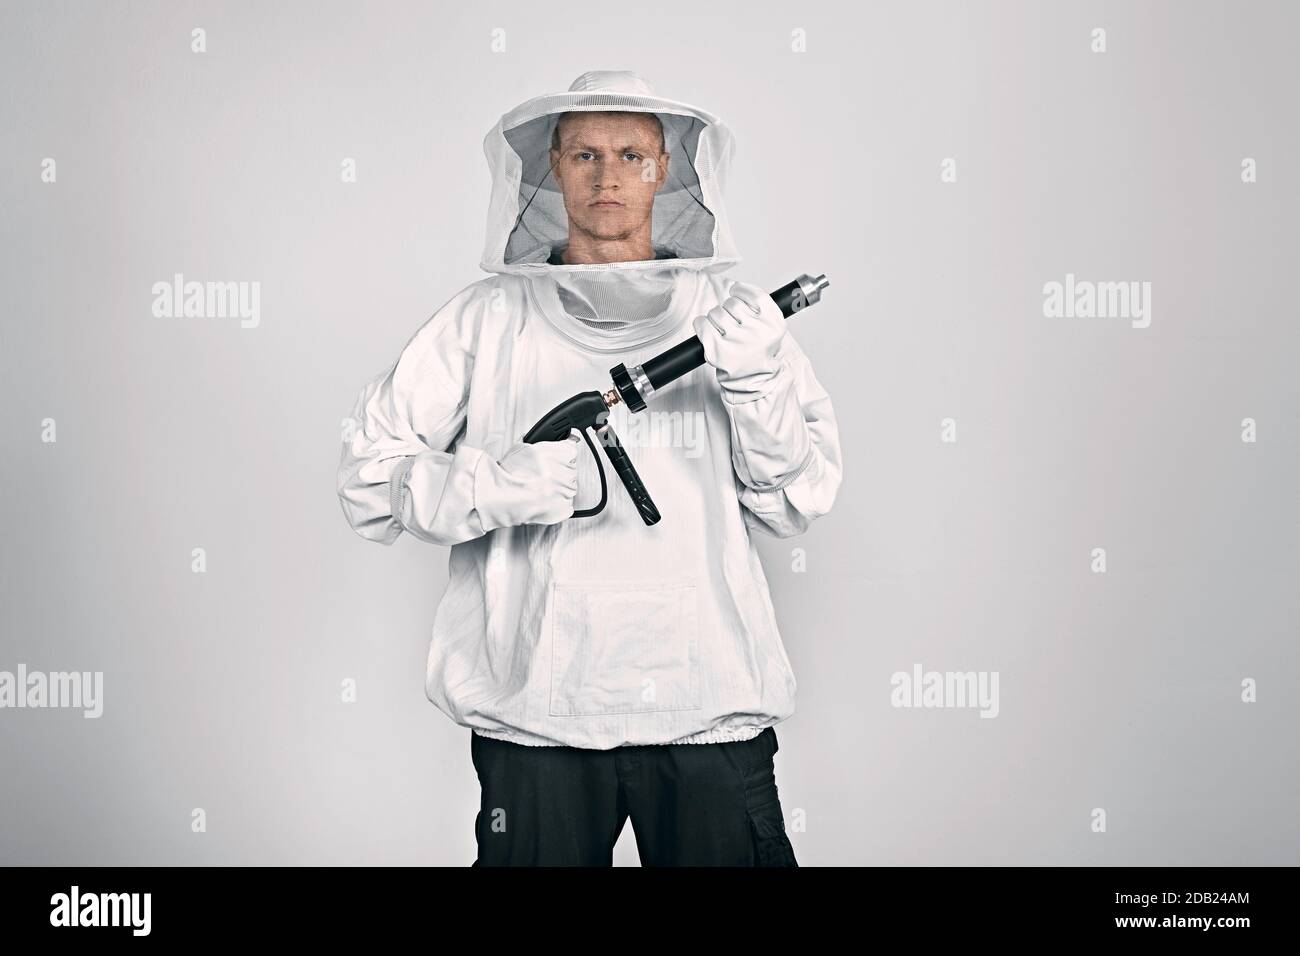 DEUTSCHLAND / Frankfurt Main /Exterminator trägt einen Beekeeper-Anzug und hält eine Pestizid-Spritzpistole. Stockfoto